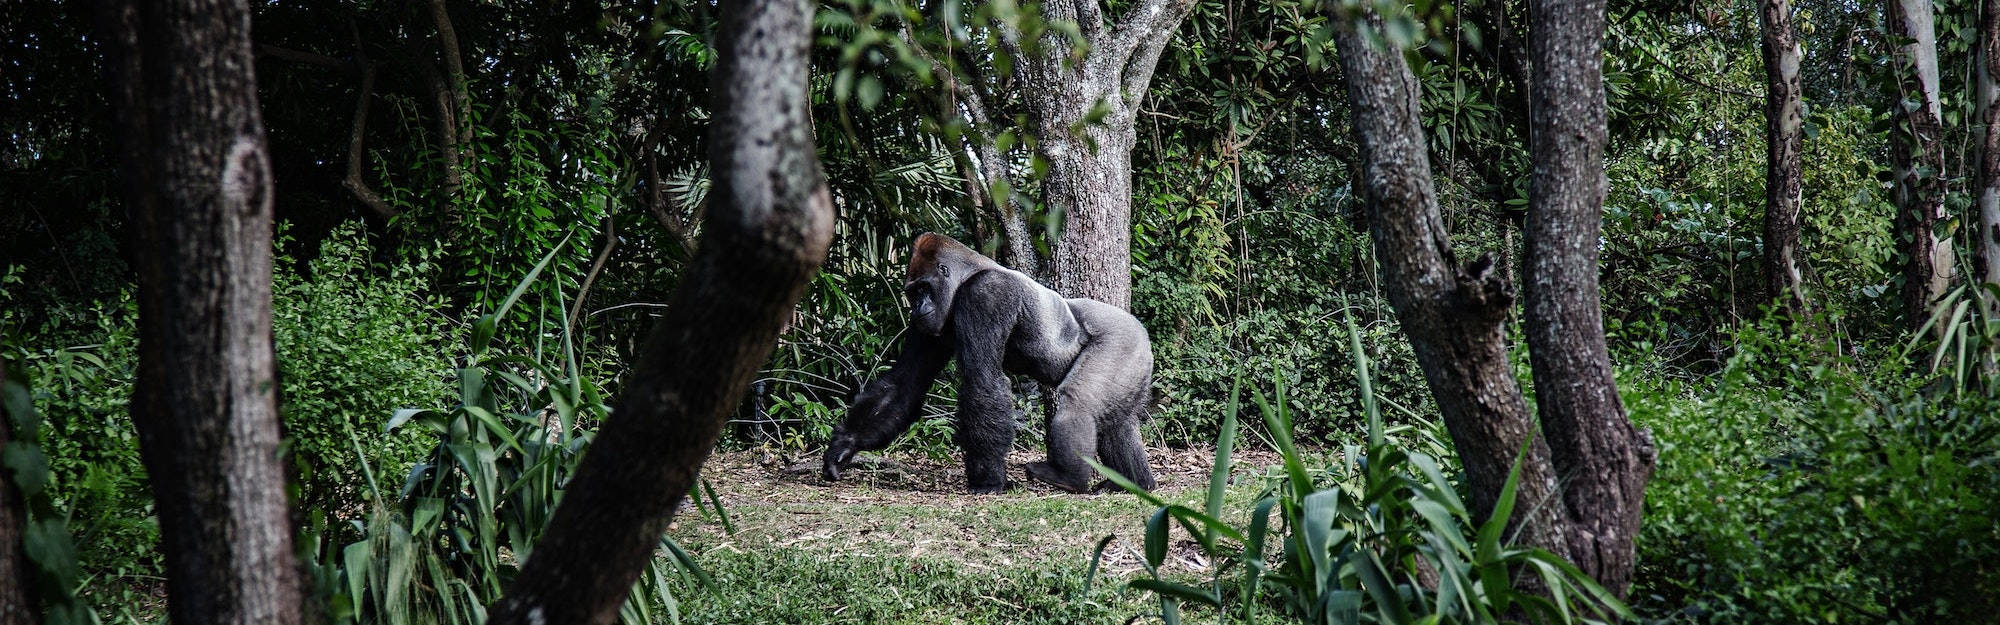 Gorilla In Gabon Picture